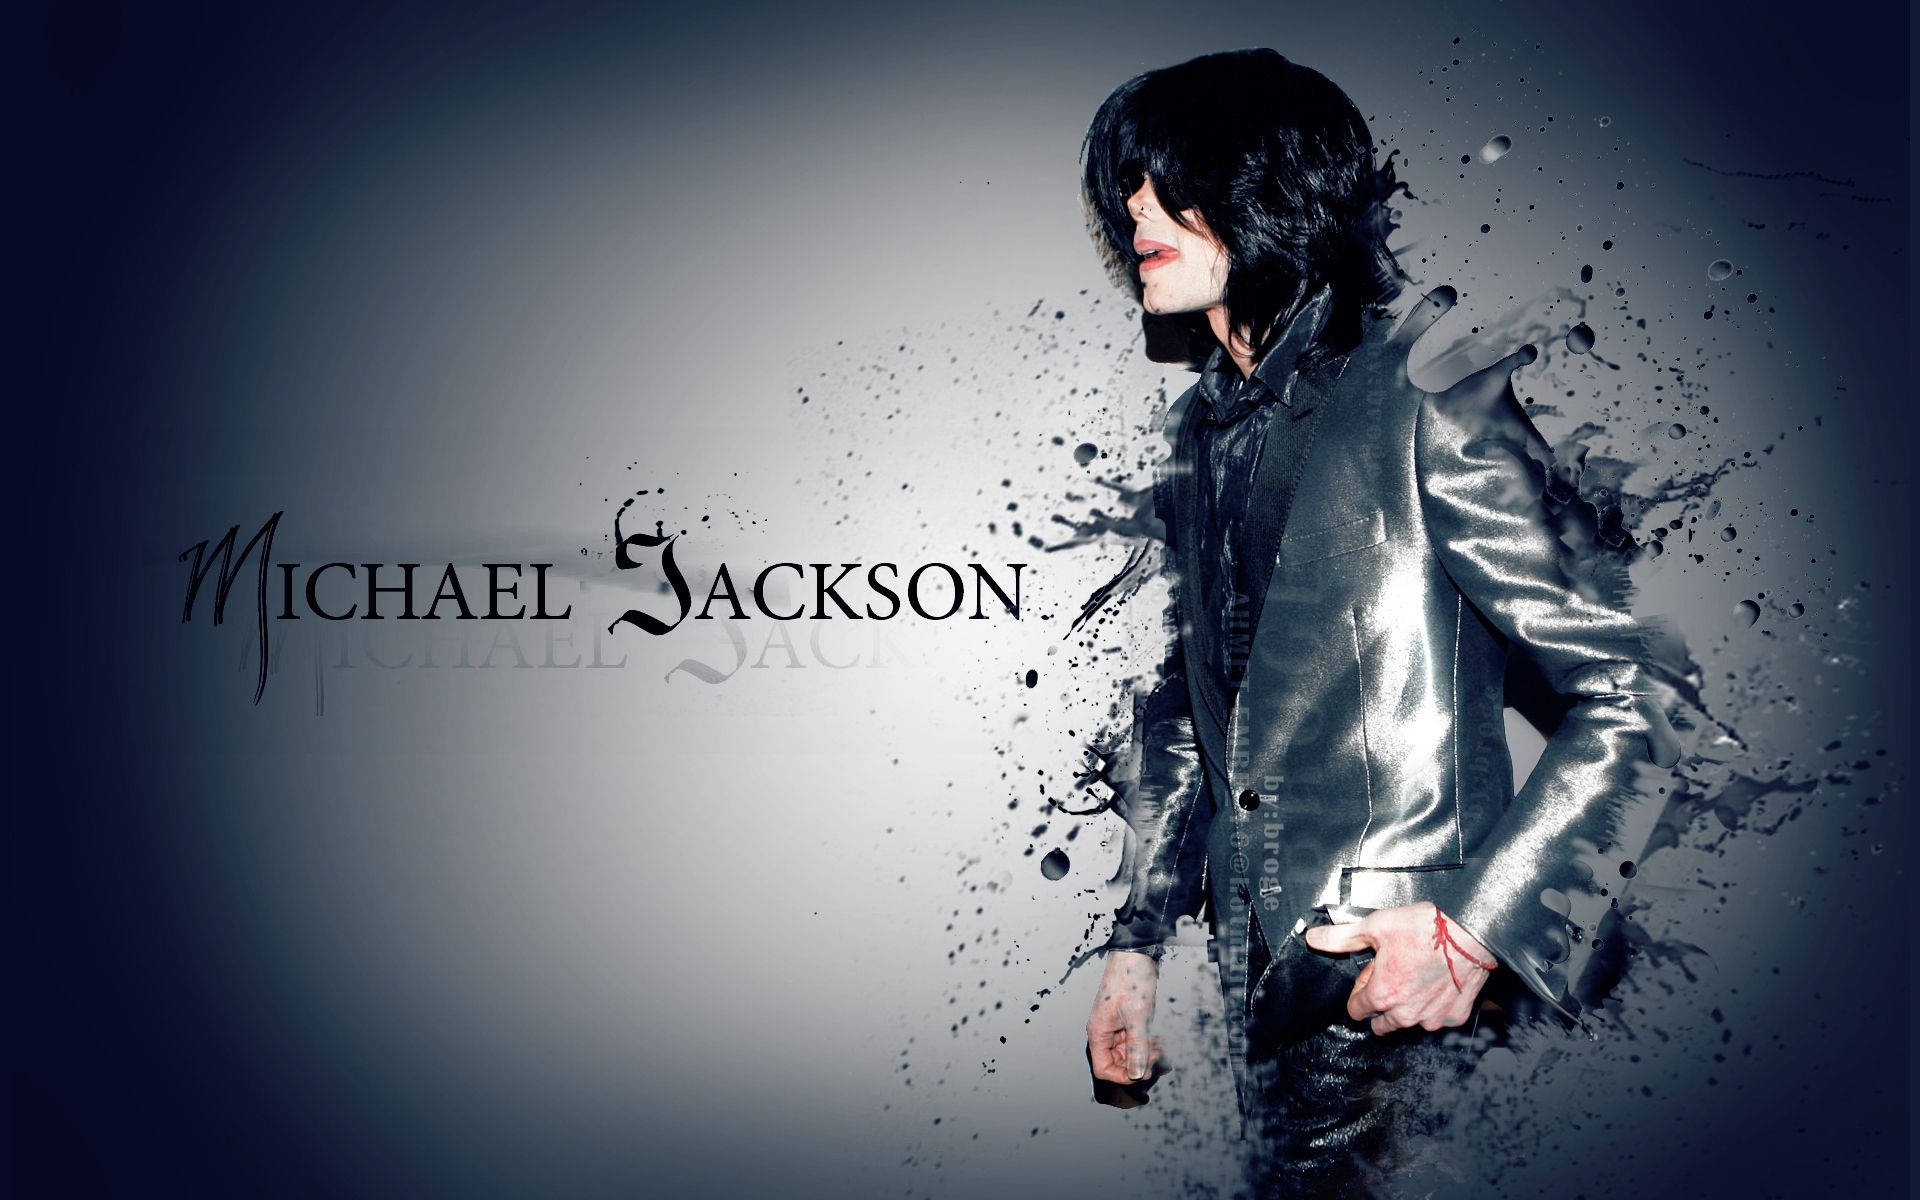 Free Michael Jackson Wallpaper Downloads, Michael Jackson Wallpaper for FREE